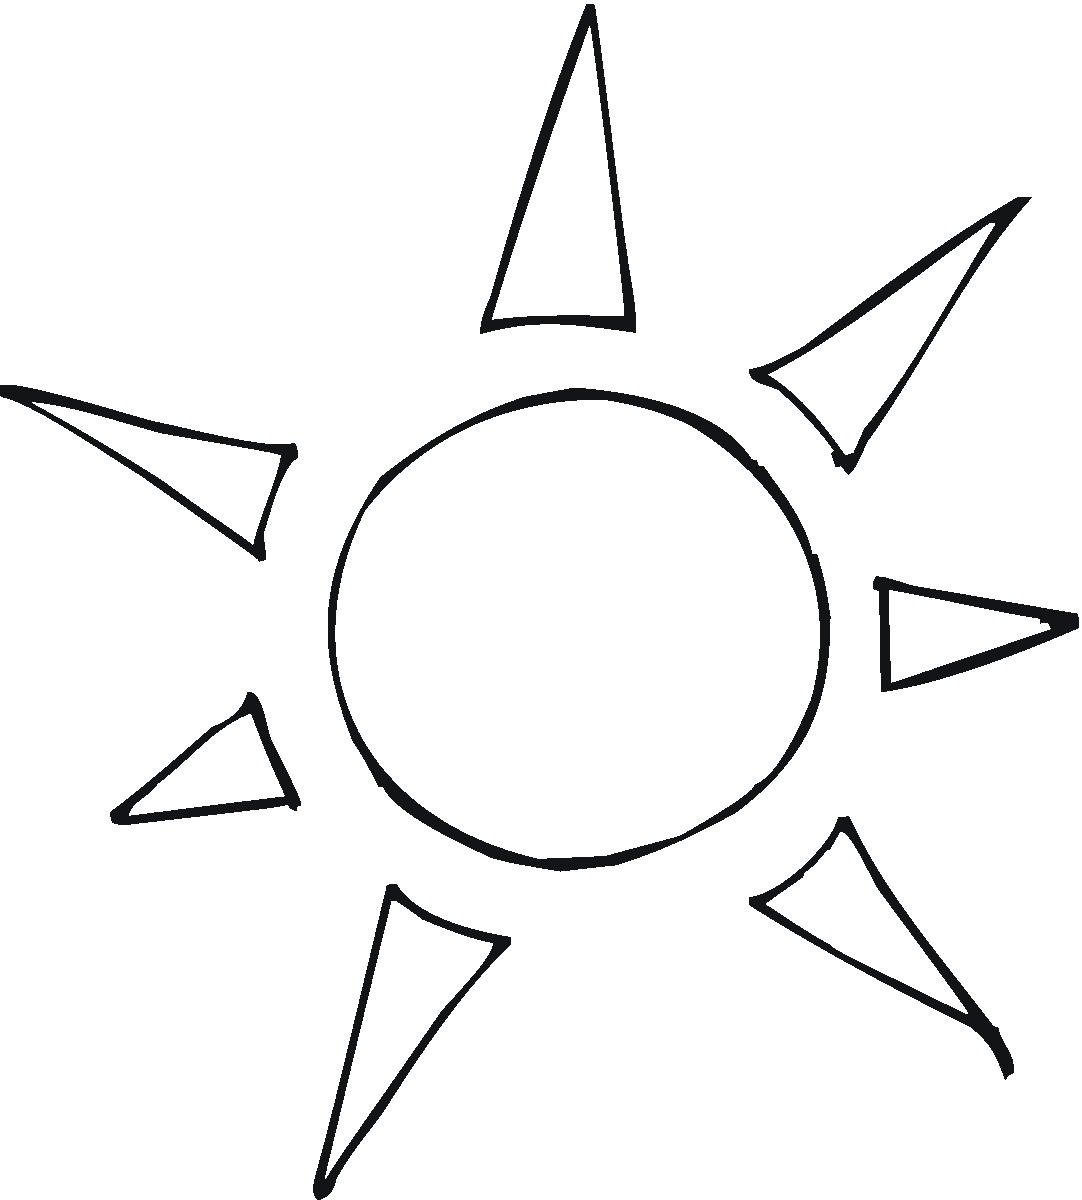 Шаблон солнца с лучами для вырезания